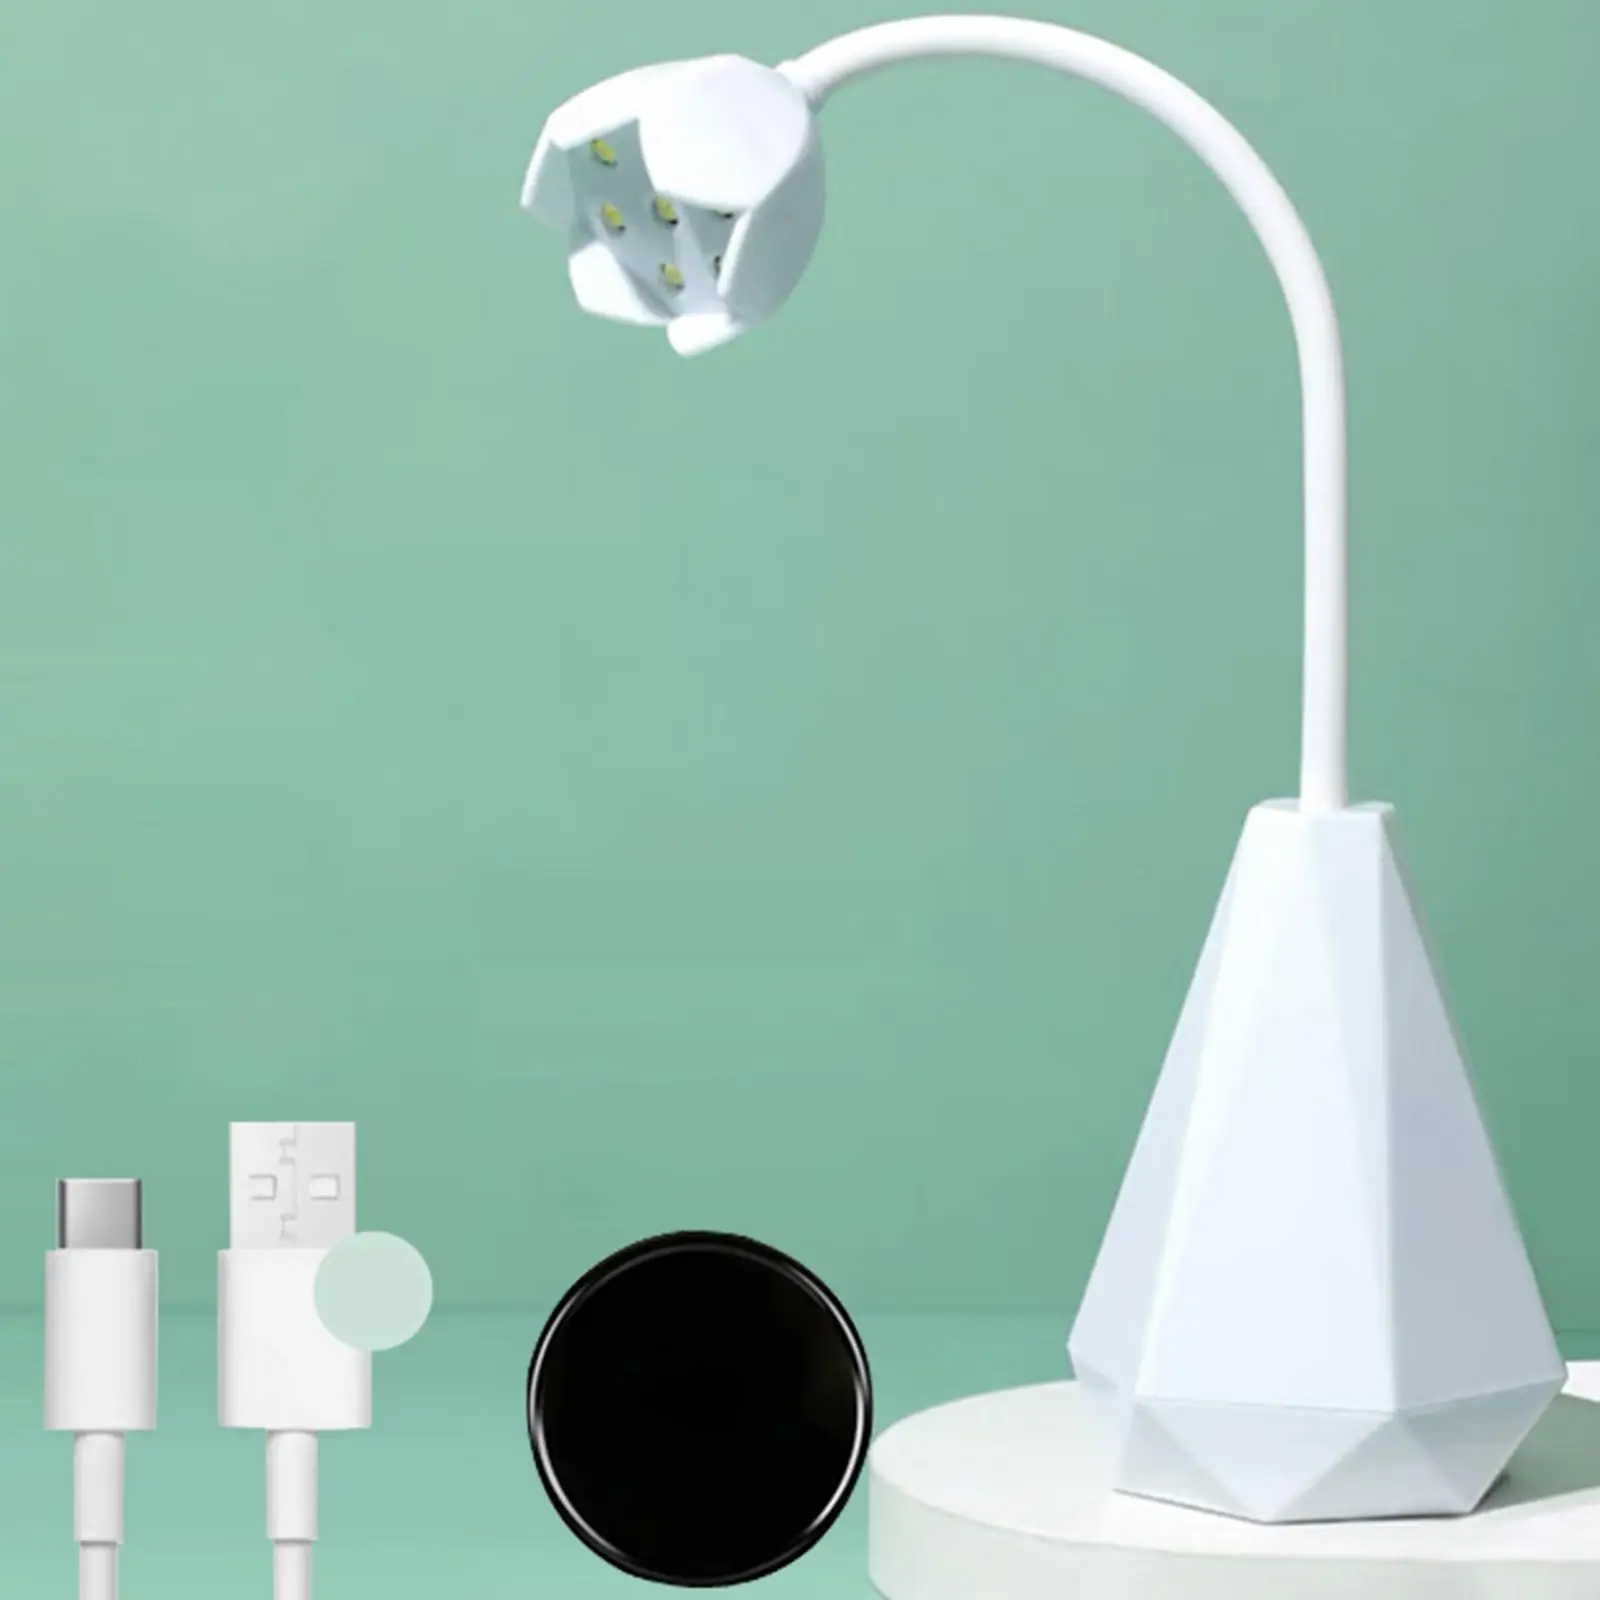 LED Nail Drying Lamp Rotatable Nail Polish Curing Lamp Nail Dryer Curing Lamps Hands Free Flexible Desk Lamps for Home DIY